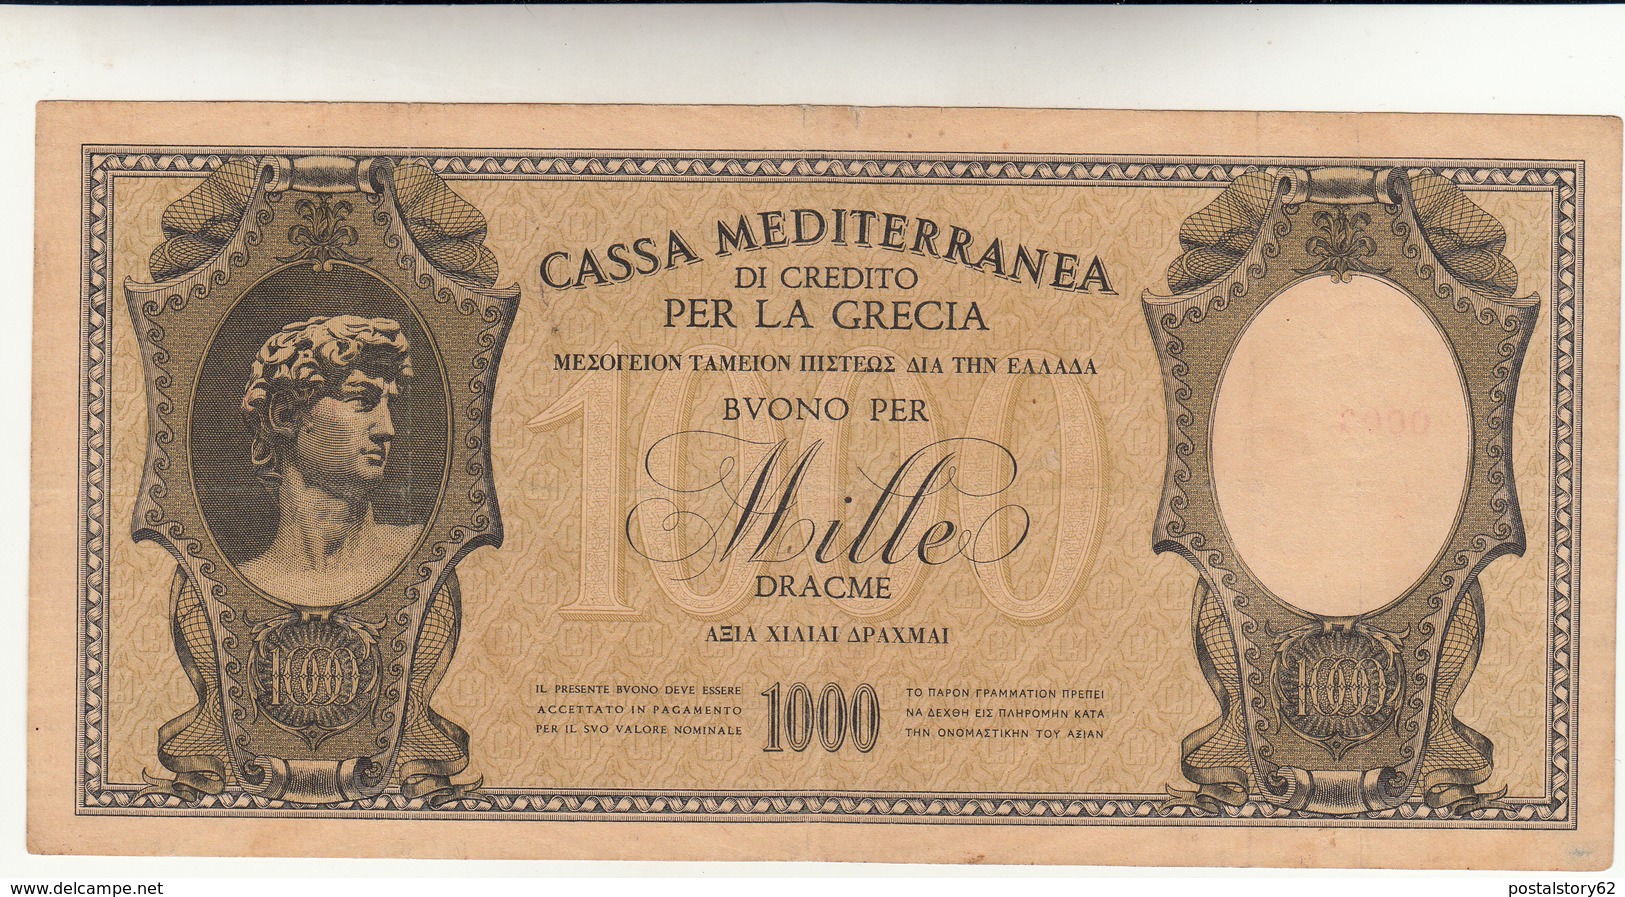 Buono Per 1000 Dracme Cassa Mediterranea Di Credito Per La Grecia - Italiaanse Egeïsche Bezetting